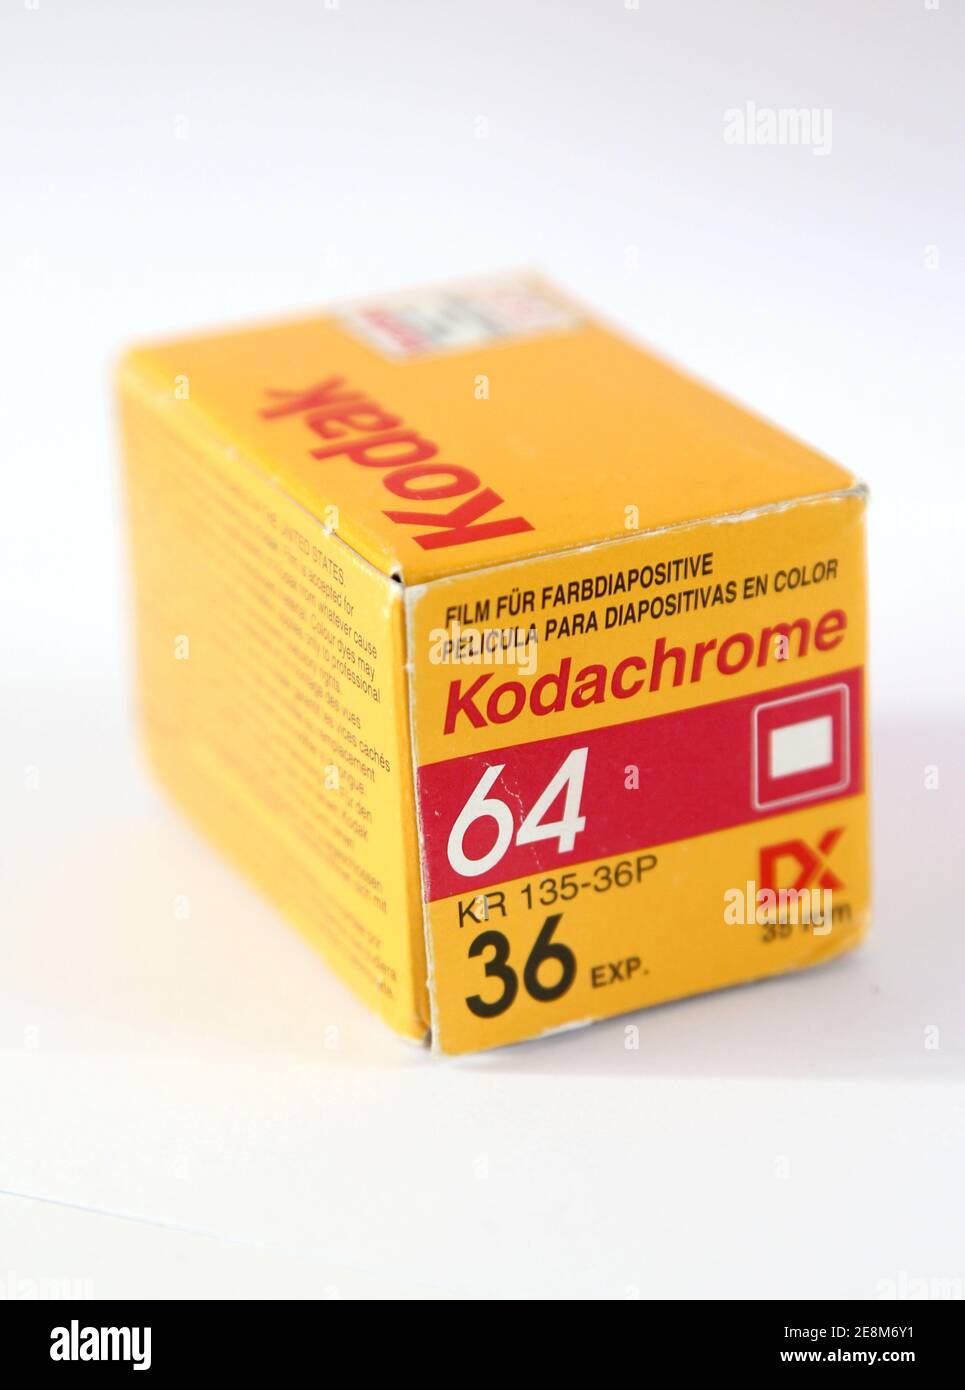 MOTALA, SVEZIA - 18 SETTEMBRE 2012: Kodachrome 64 della casa produttrice di film Kodak. Foto Stock